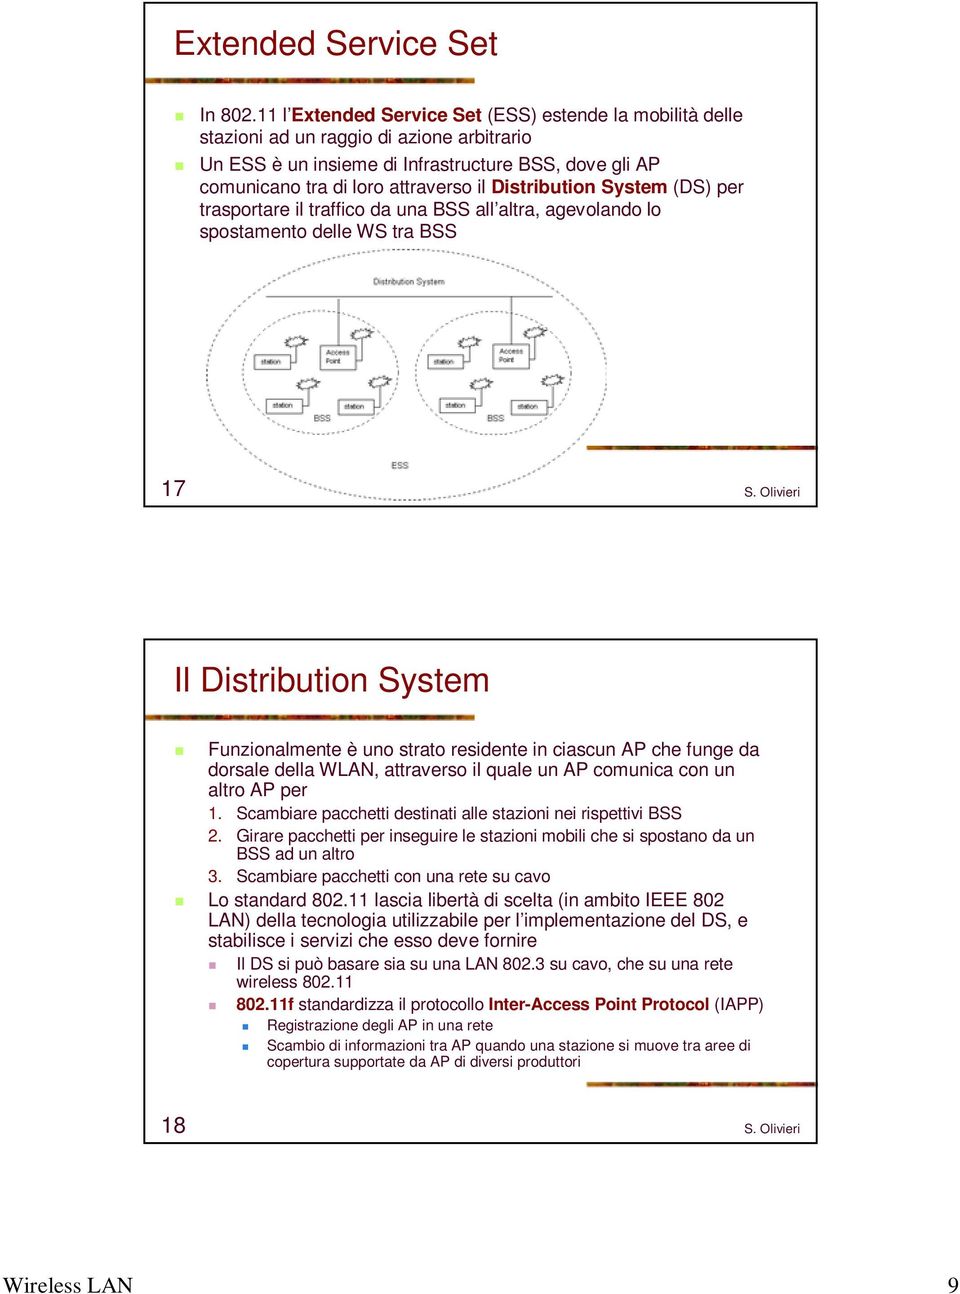 Distribution System (DS) per trasportare il traffico da una BSS all altra, agevolando lo spostamento delle WS tra BSS 17 Il Distribution System Funzionalmente è uno strato residente in ciascun AP che